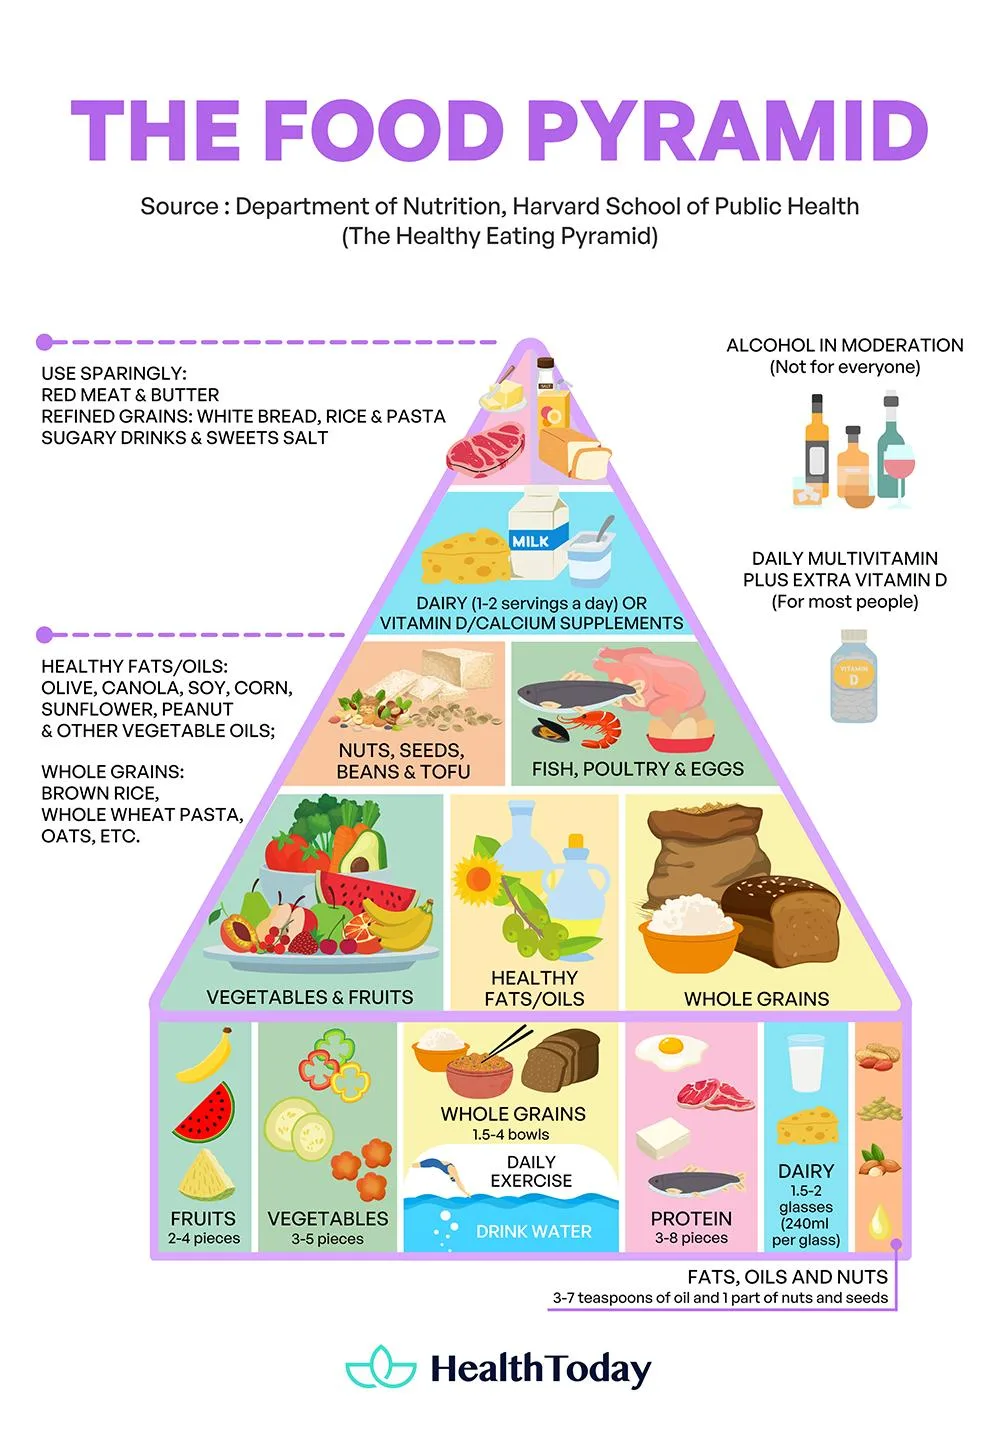 Food Pyramid - Mediterranean diet